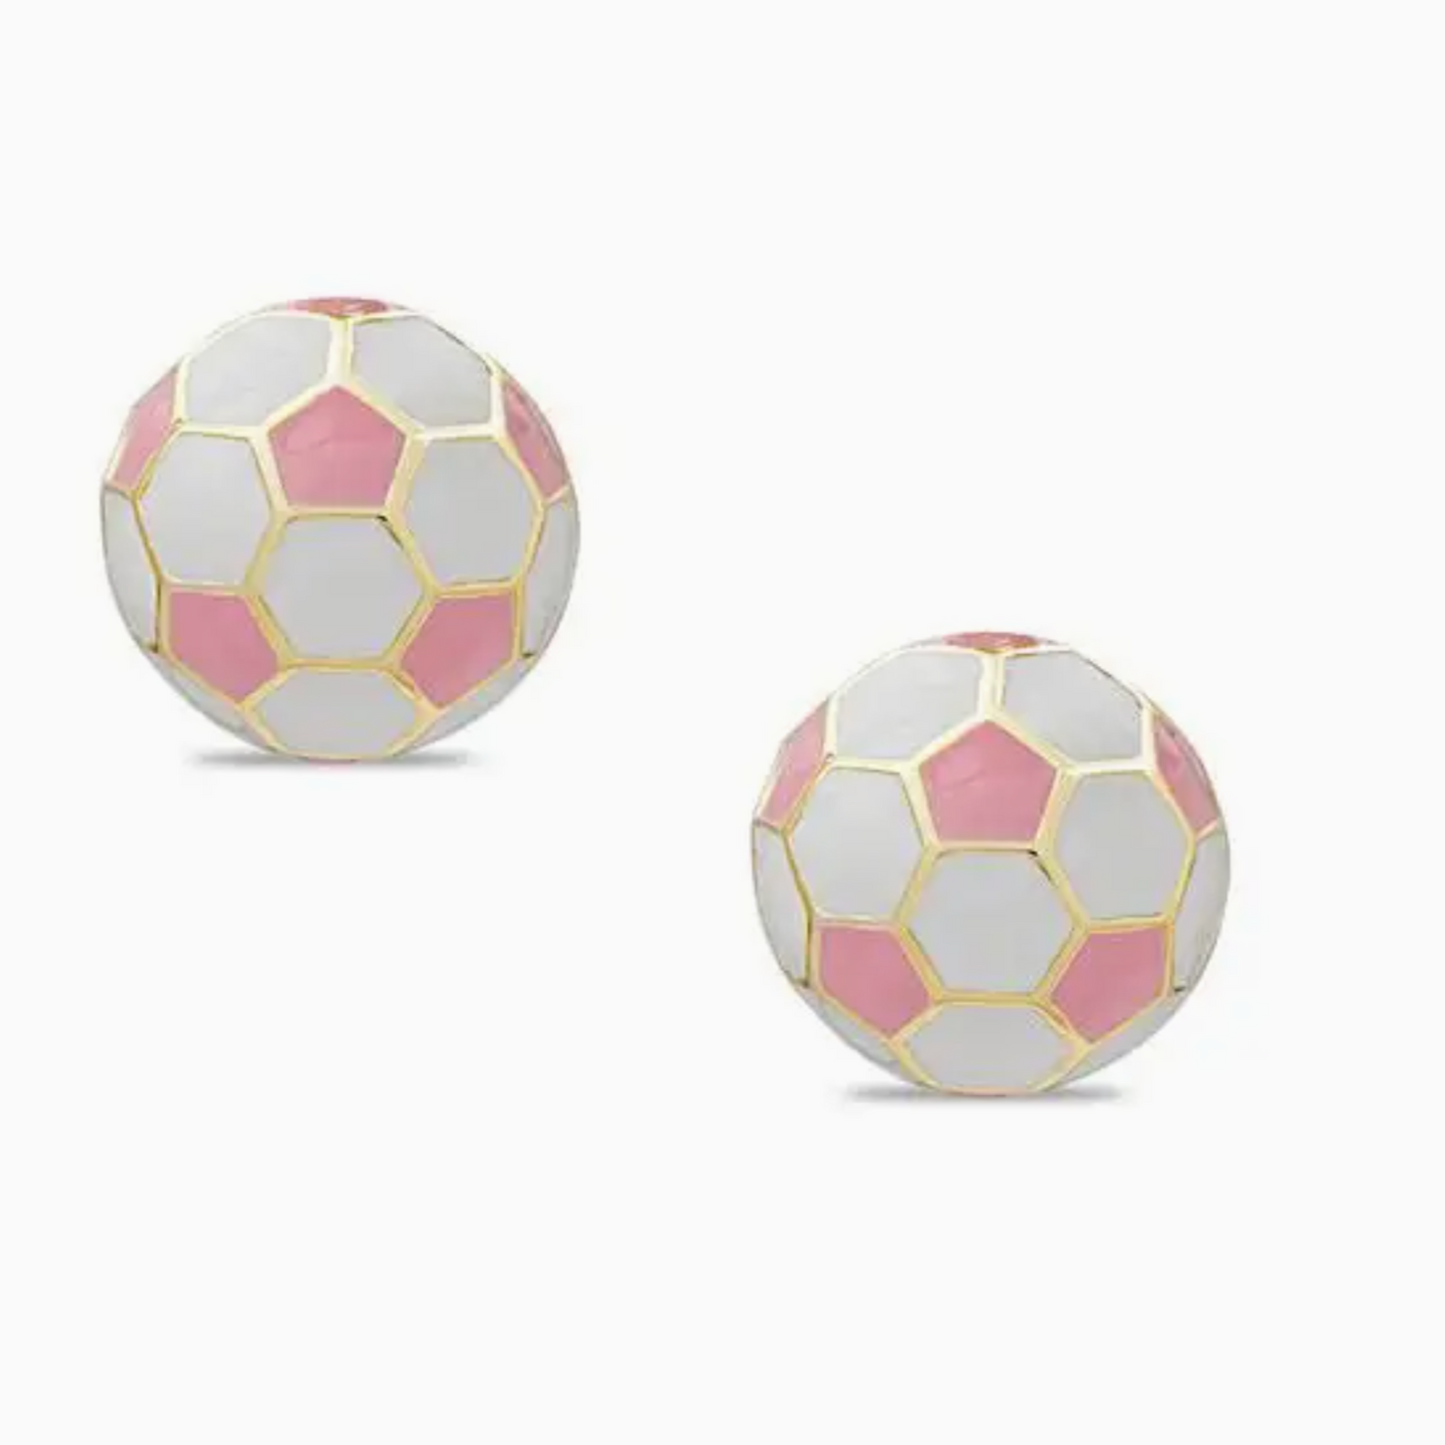 3D Soccer Ball Stud Earrings